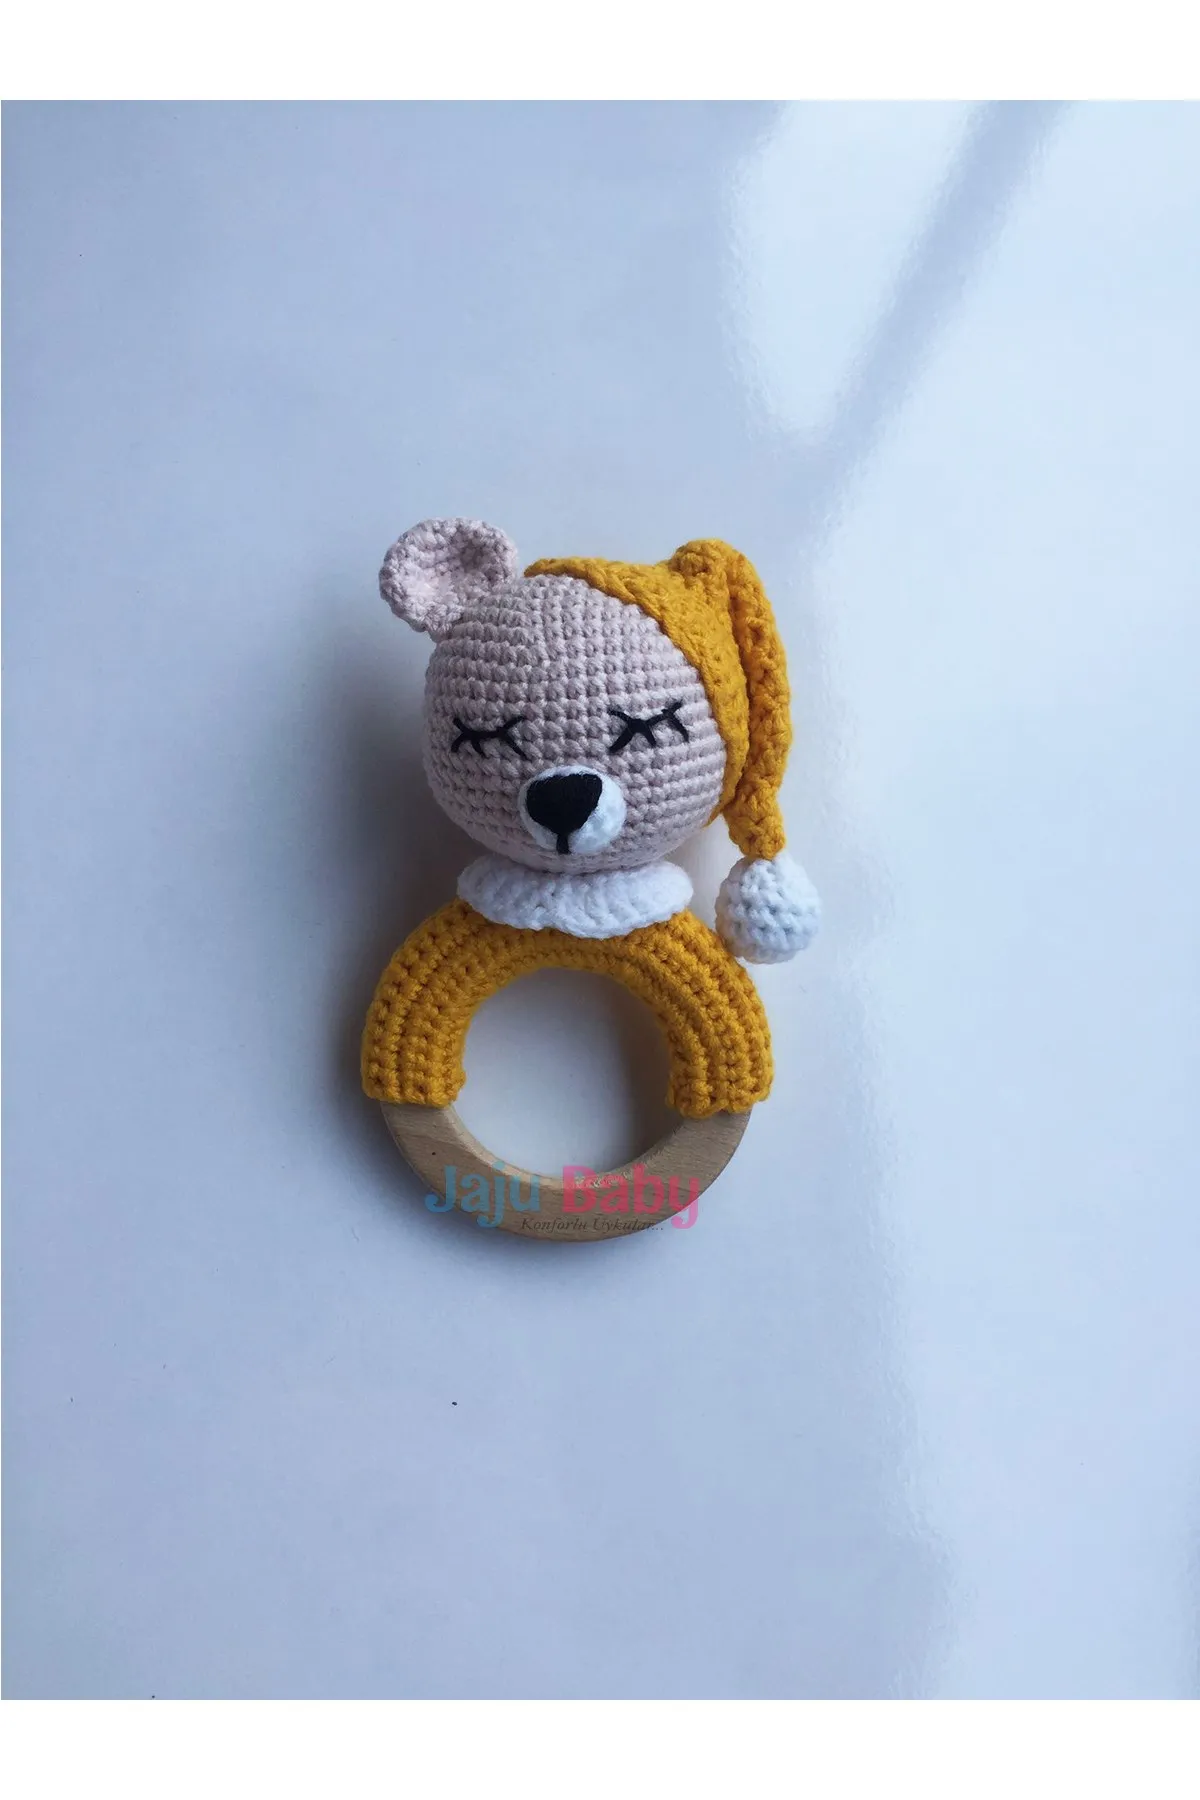 

Jaju Baby Handmade, Amigurumi Yellow Sleepy Teddy Bear Teether Rattle 14 cm